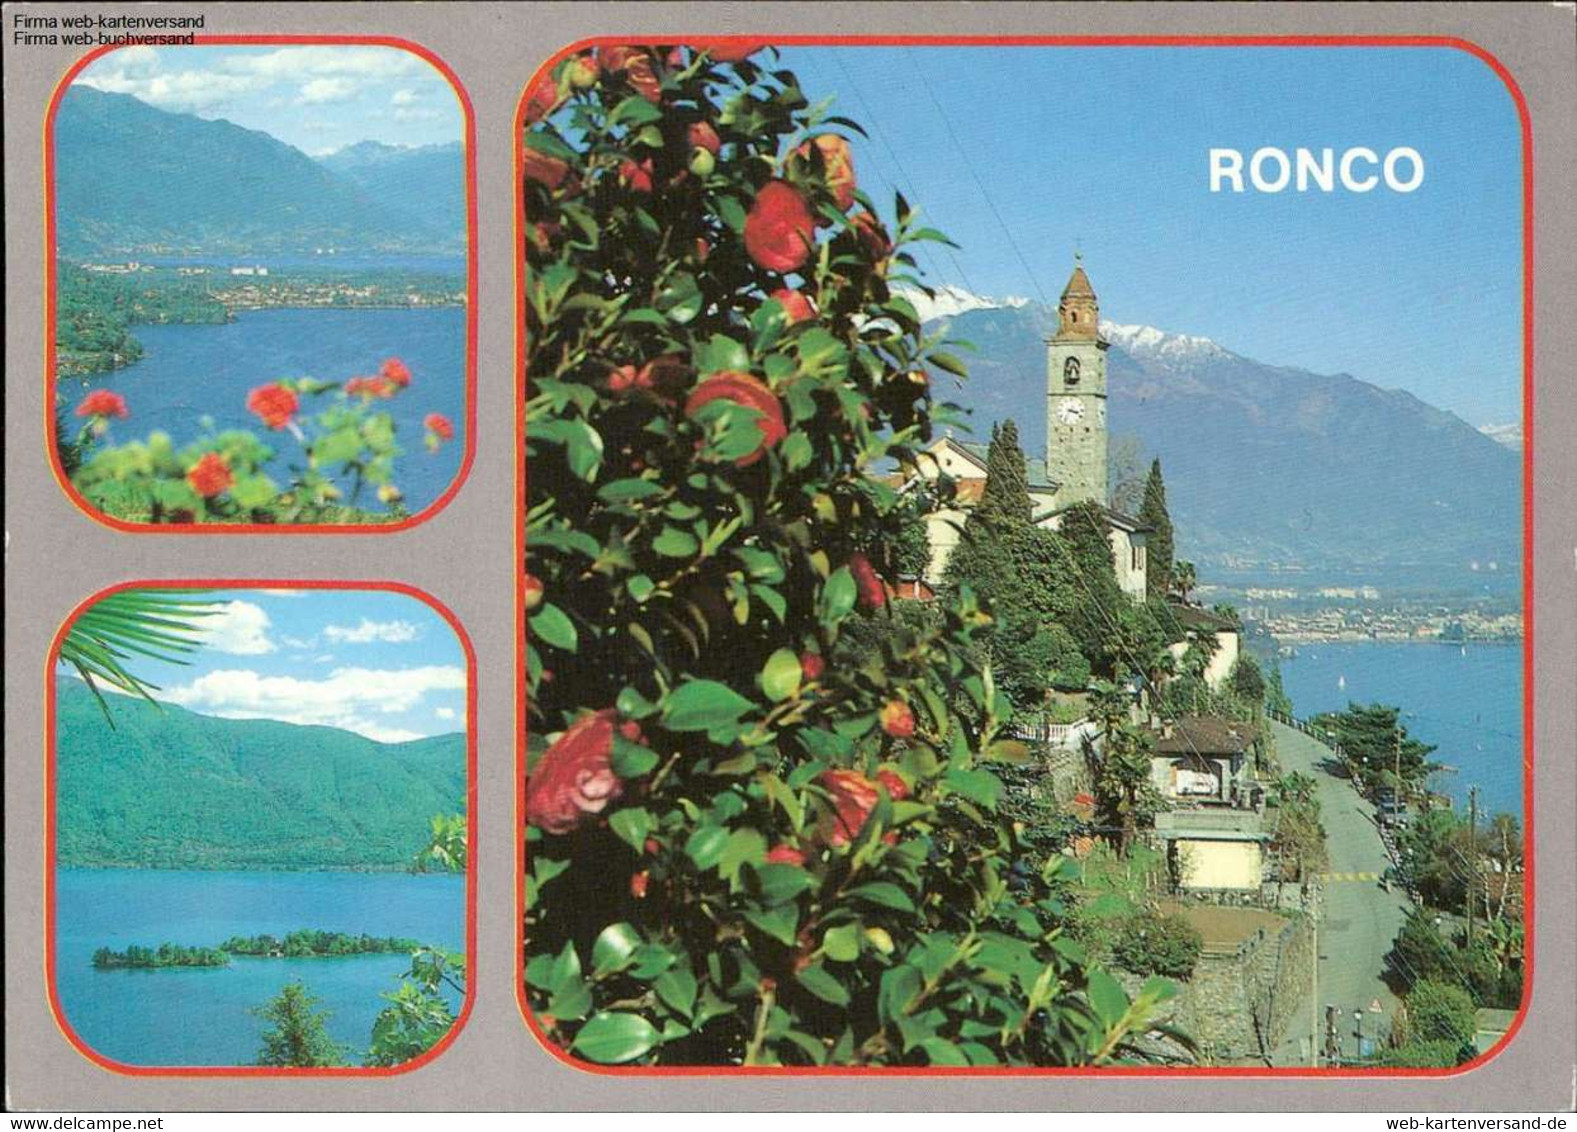 1101483 Roncoverschiedene Ansichten Mehrbildkarte - Ronco Sopra Ascona